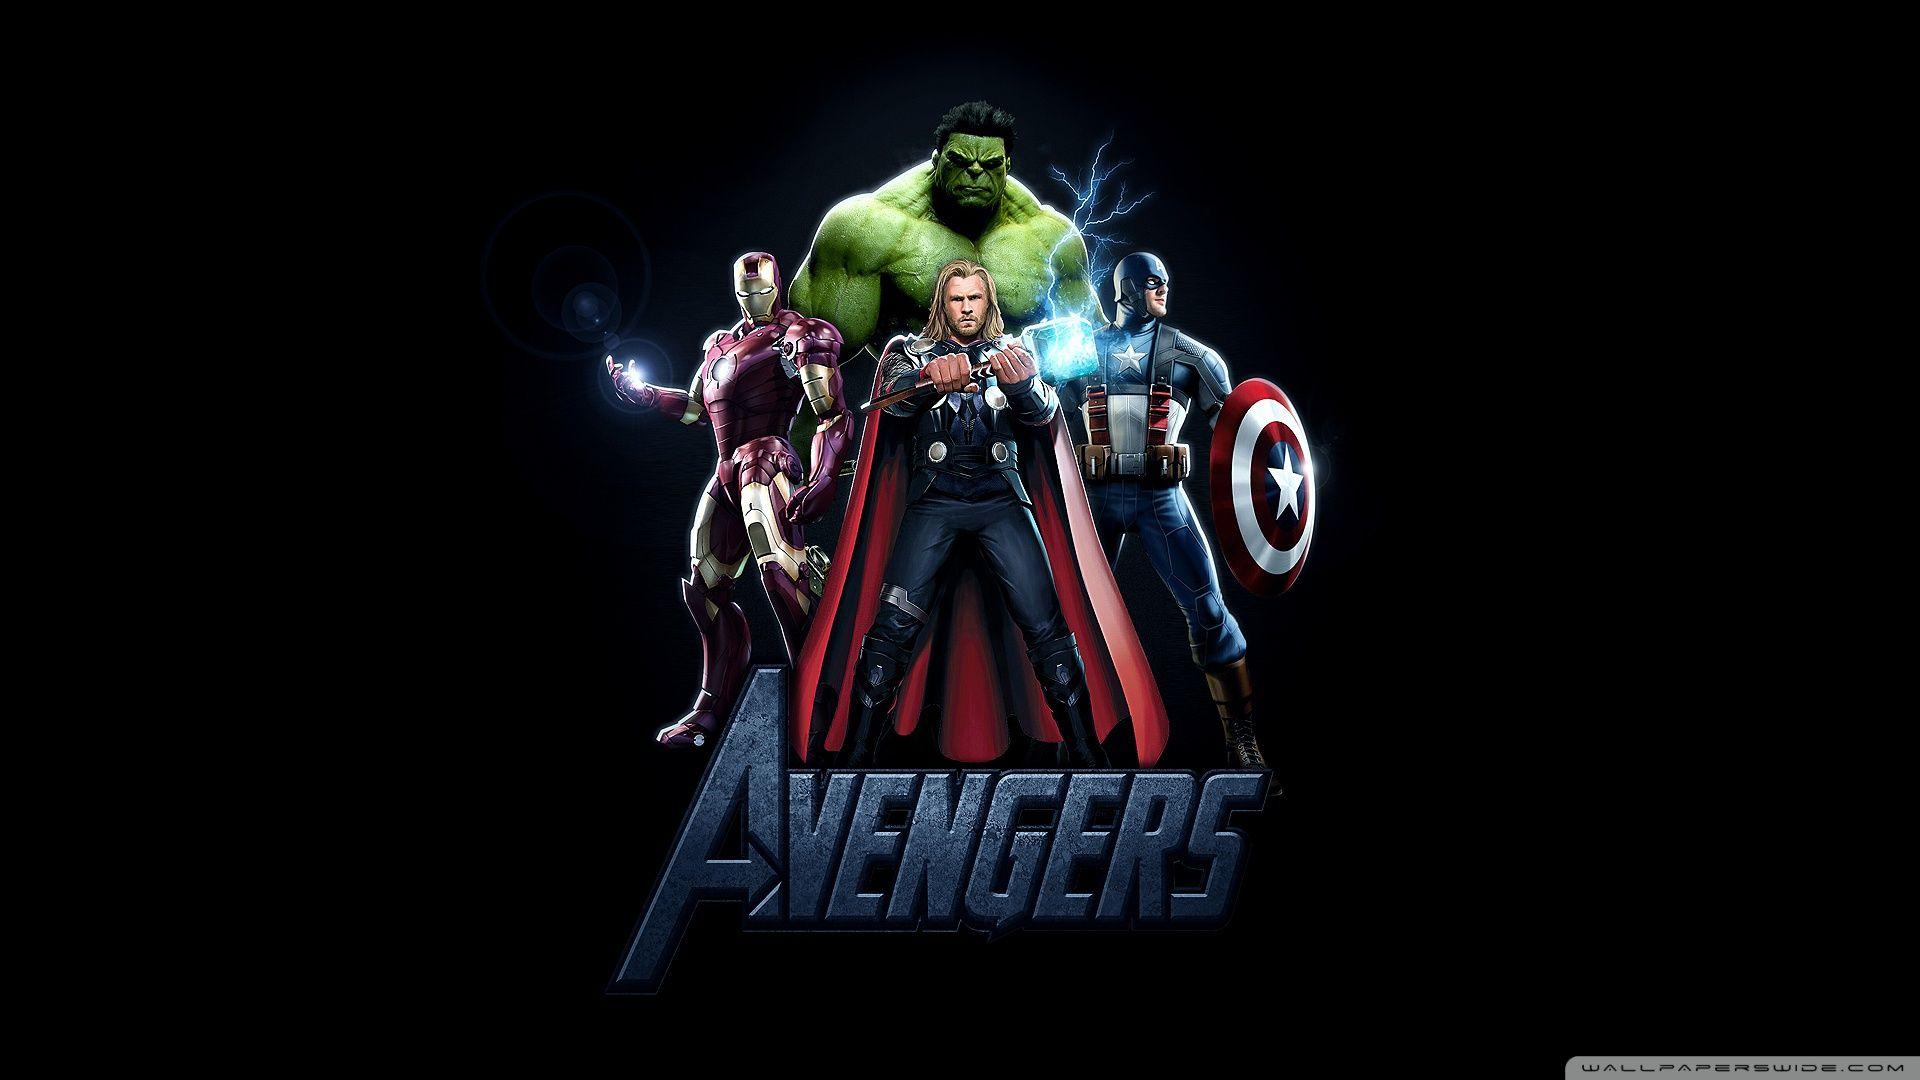 The Avengers Movie ❤ K 2K Desk 4K Wallpapers for K Ultra HD